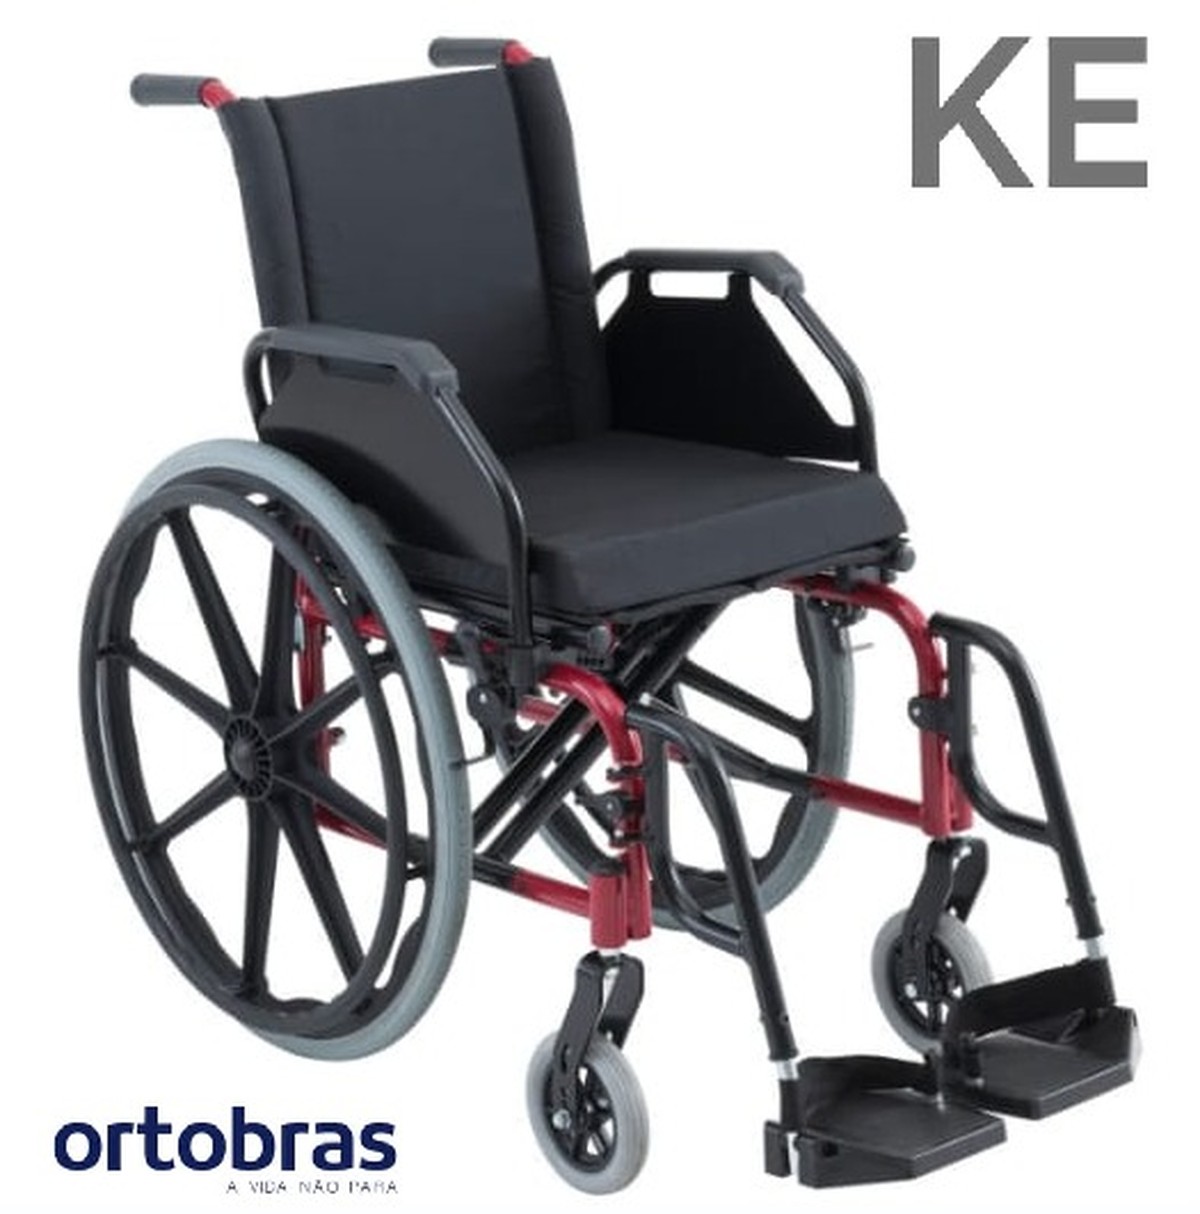 Foto do produto Cadeira de Rodas KE Até 120 Kg - Assento 48cm Ortobras 